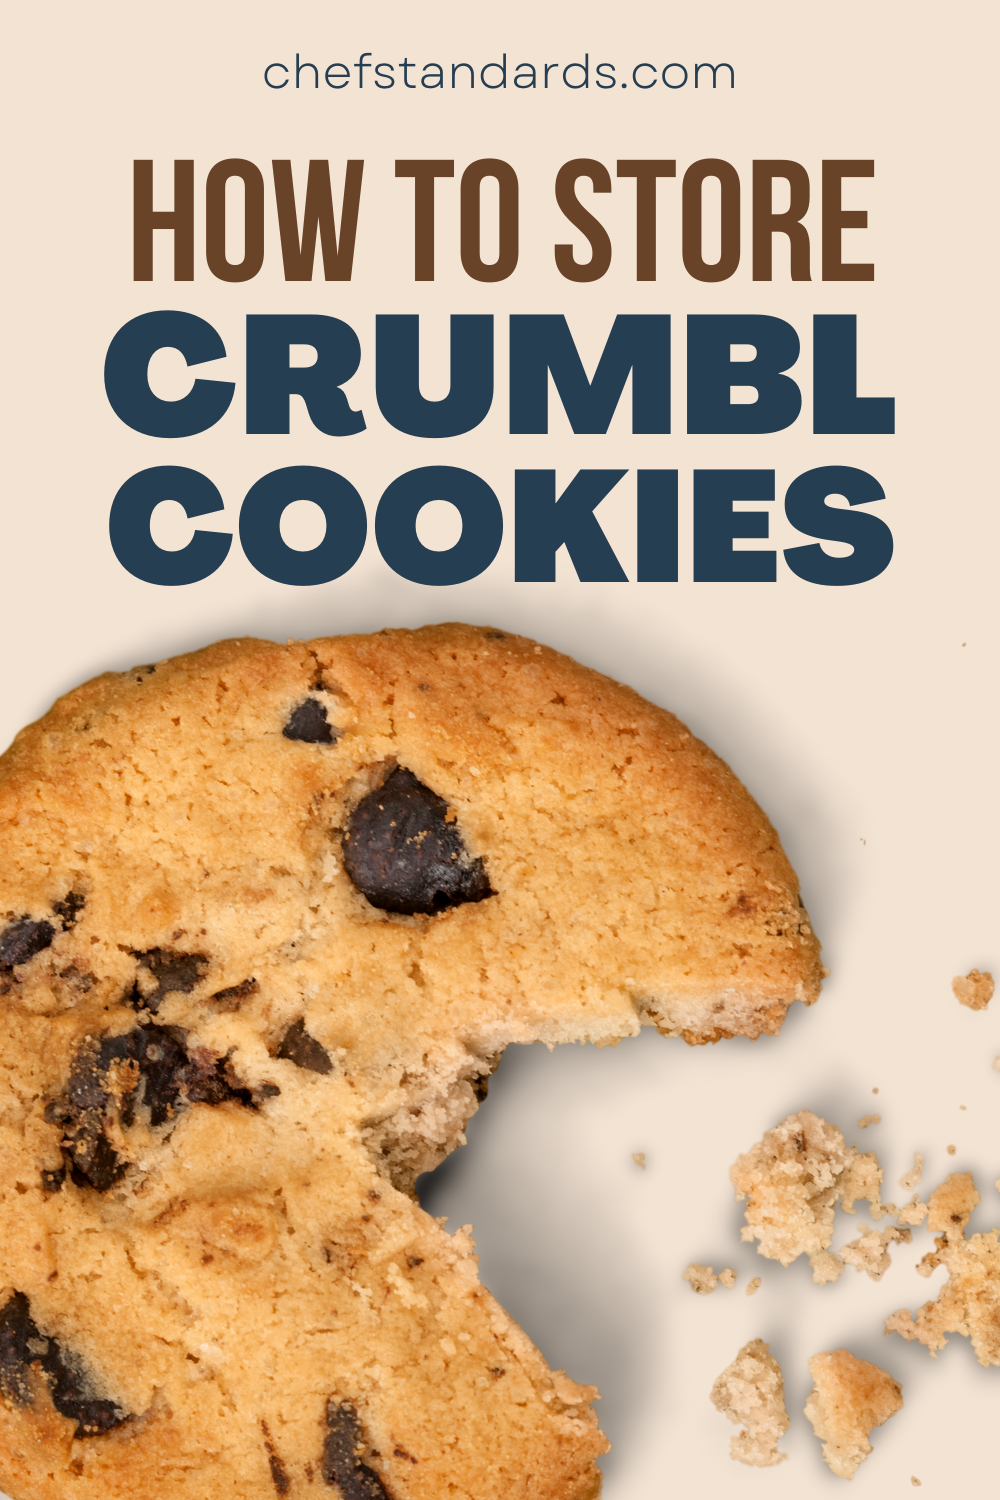 Knusprig, krümelig und immer frisch - Aufbewahrung von Crumbl Cookies 101